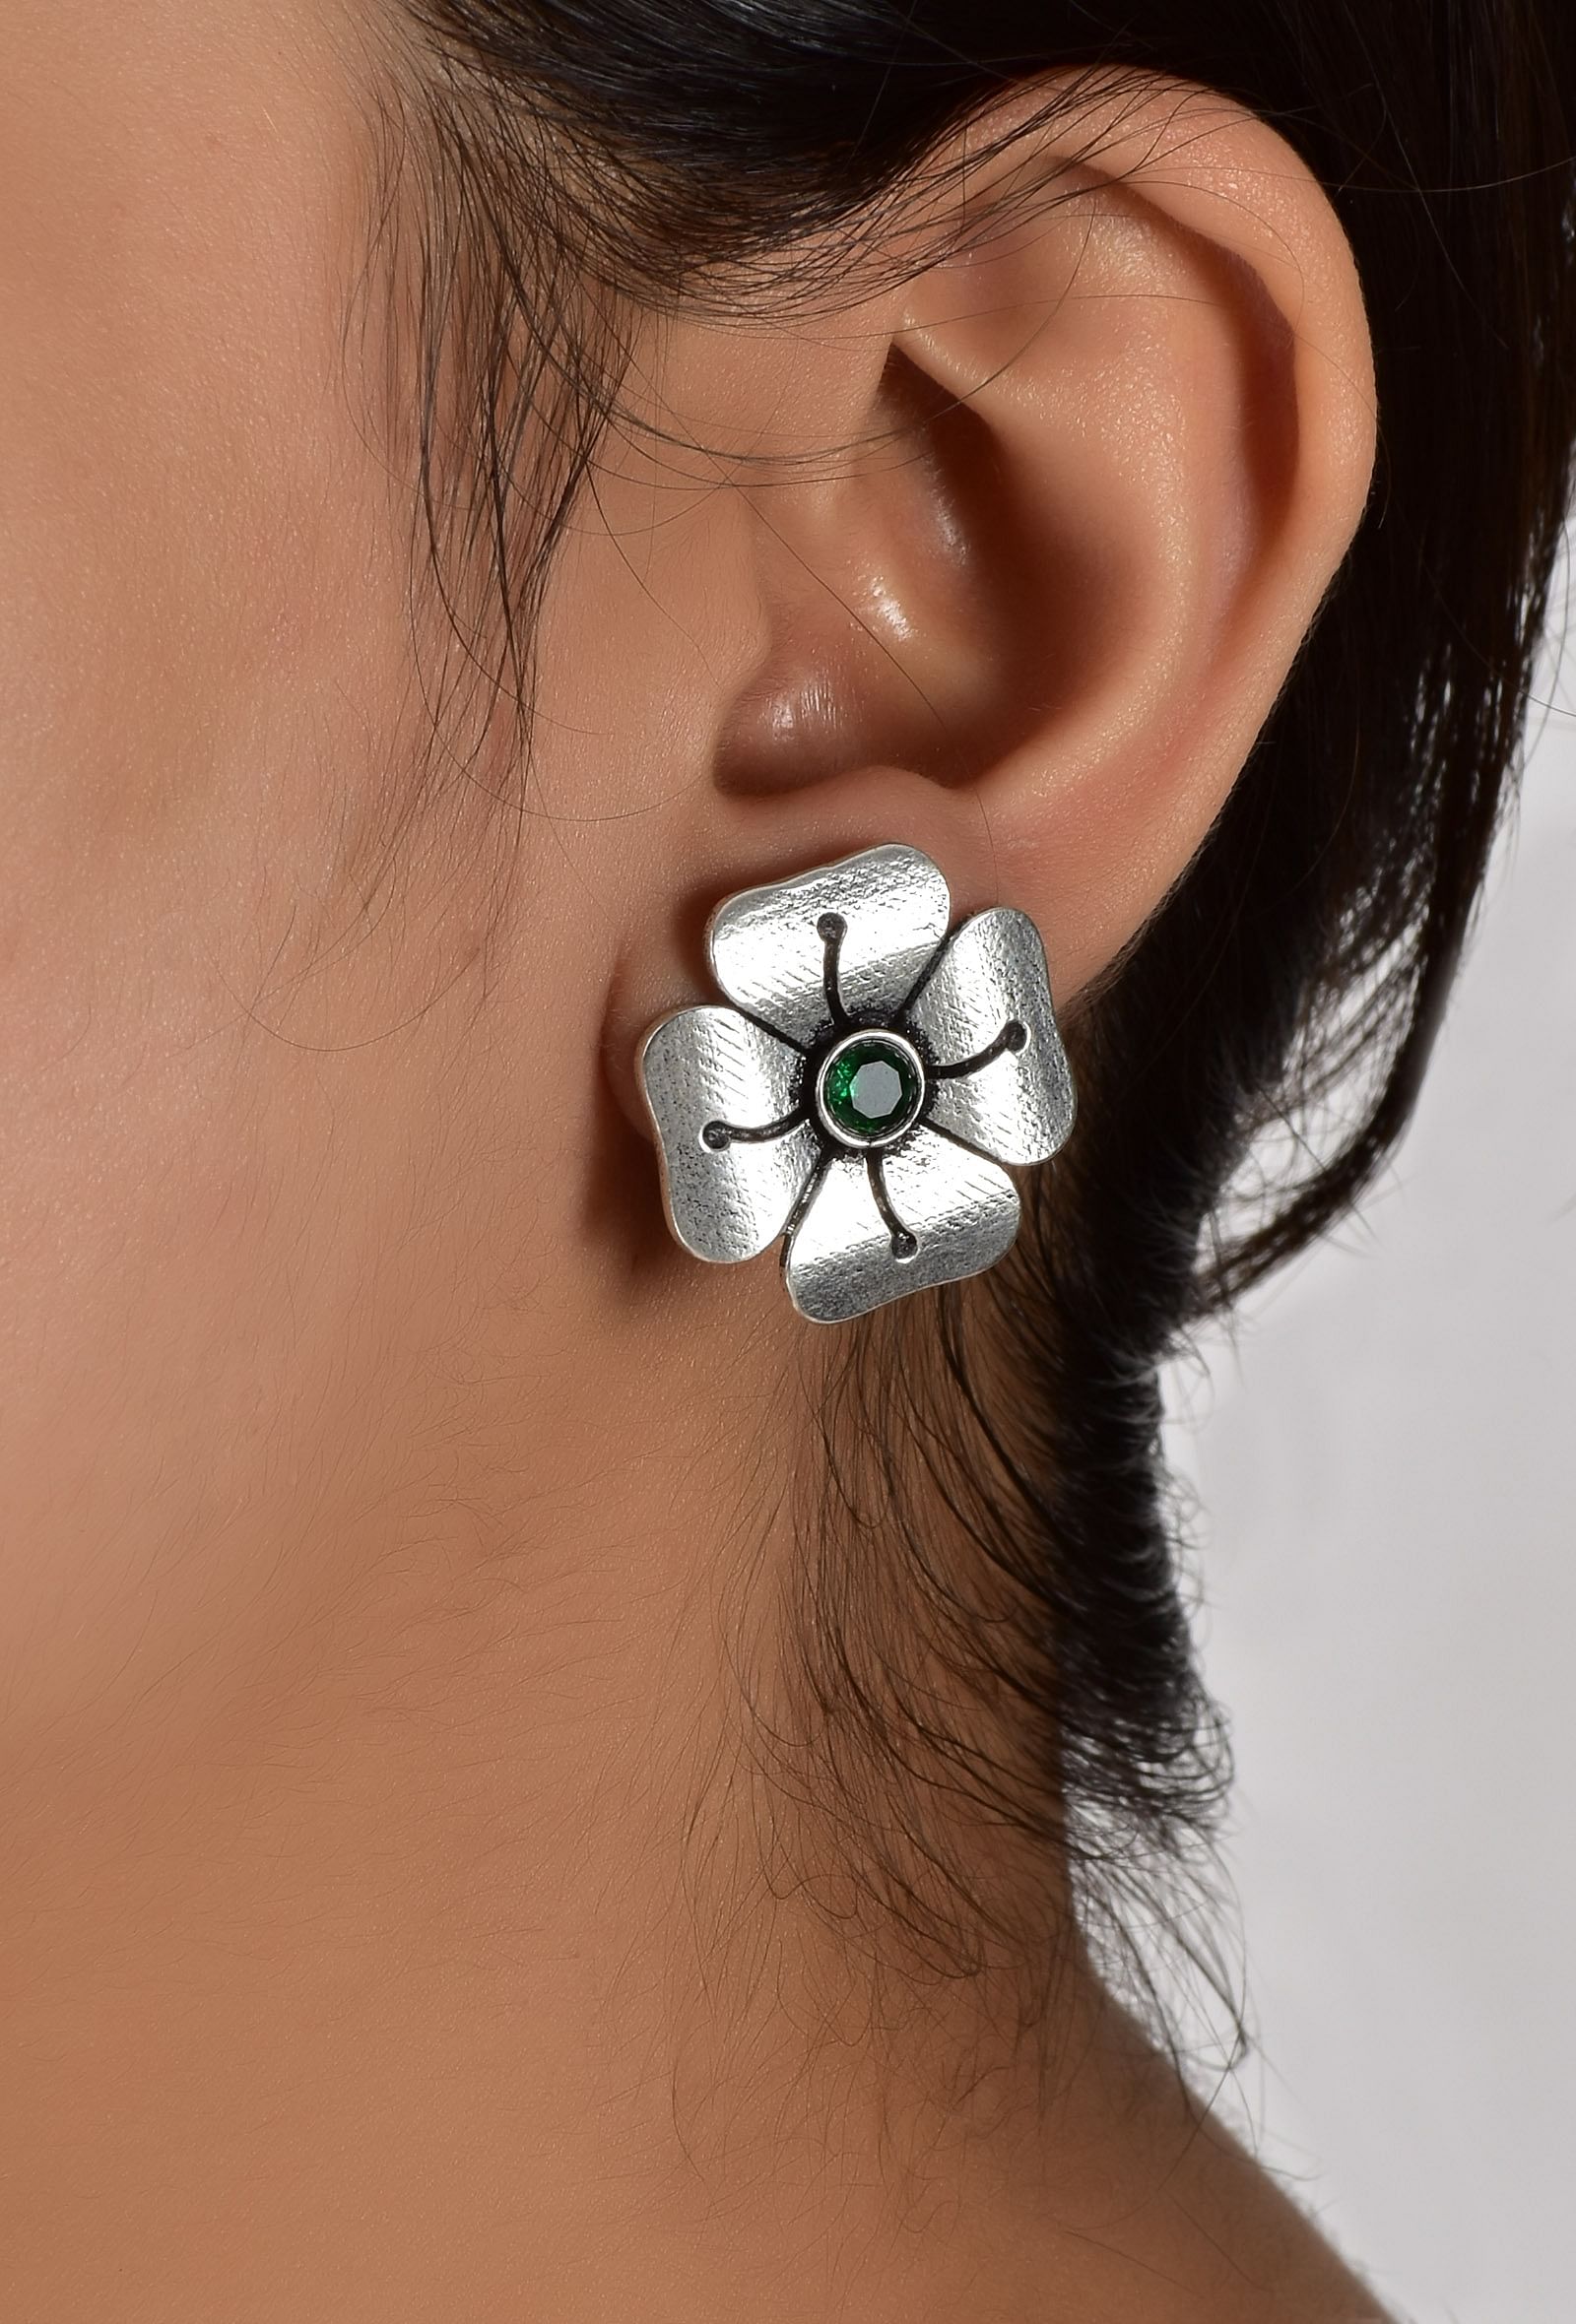 Emerald Green Studs Earrings